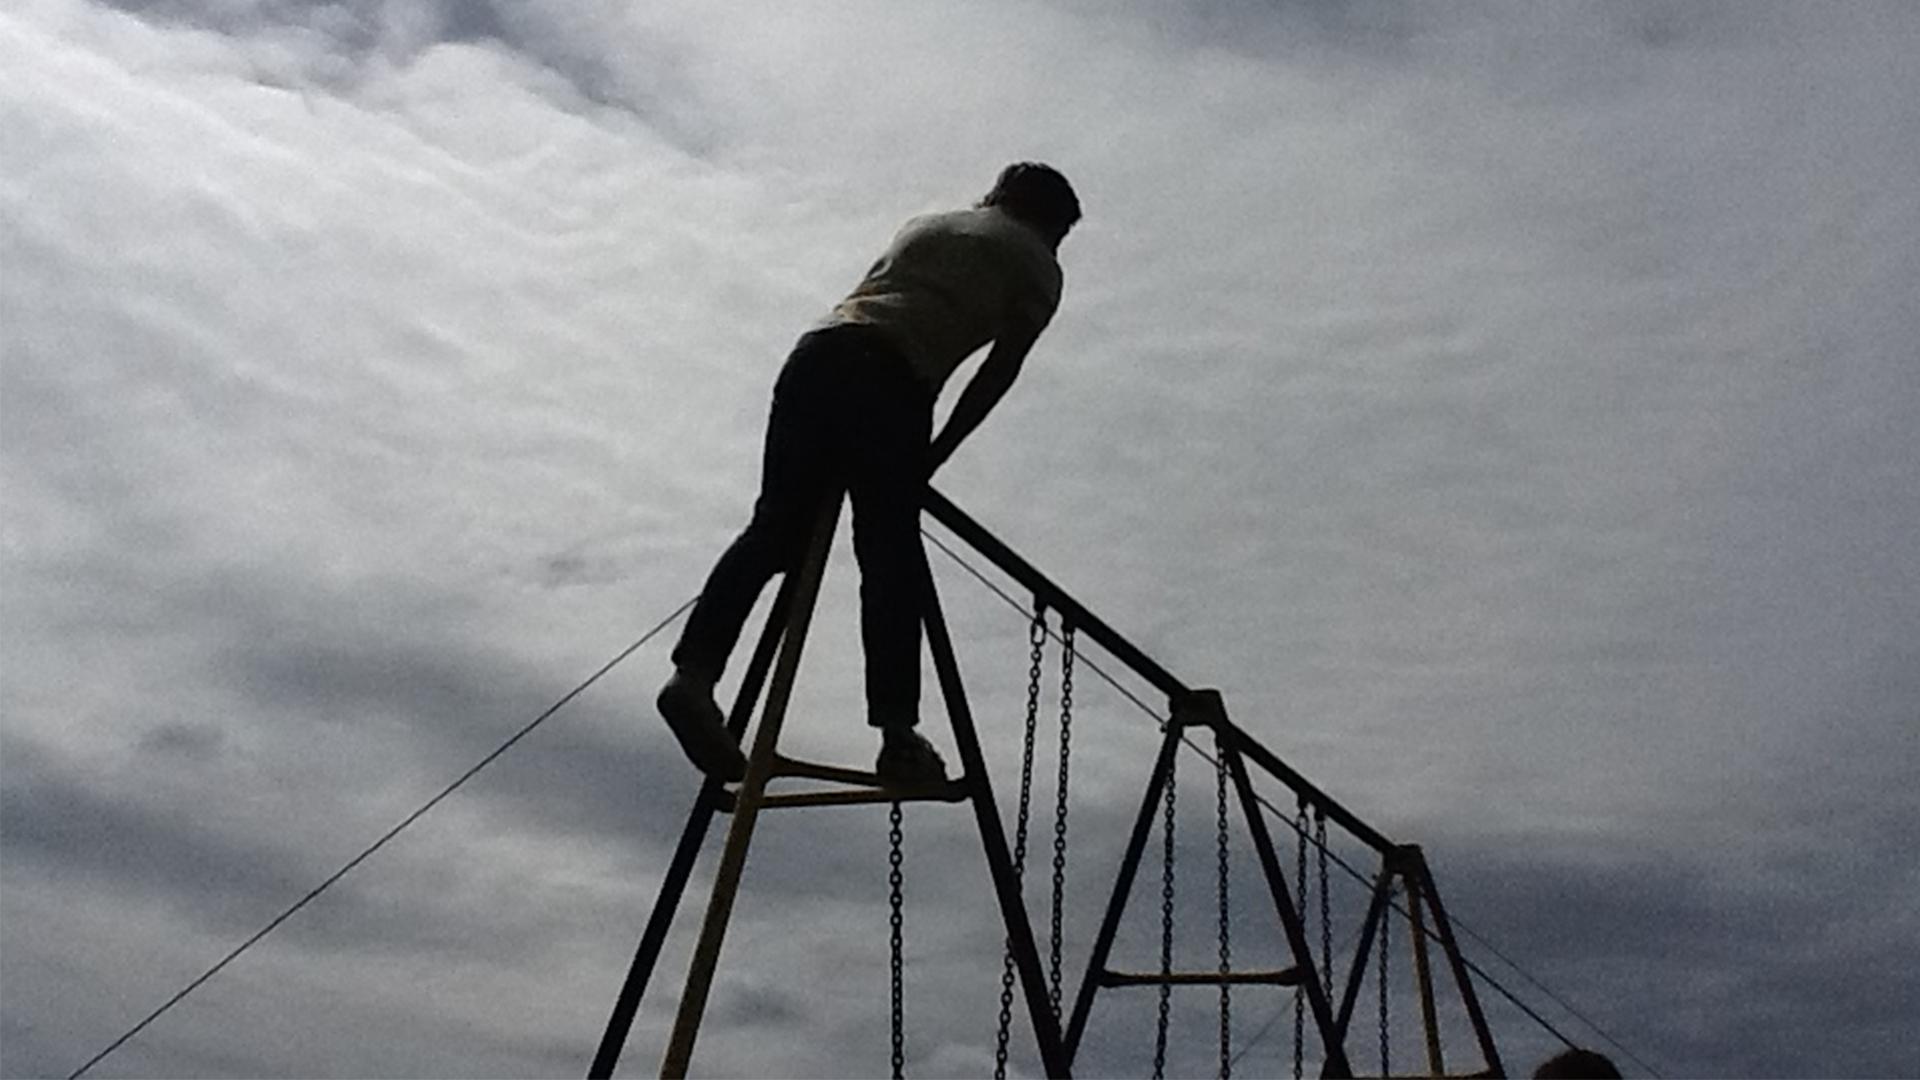 A boy standing up high on a climbing frame